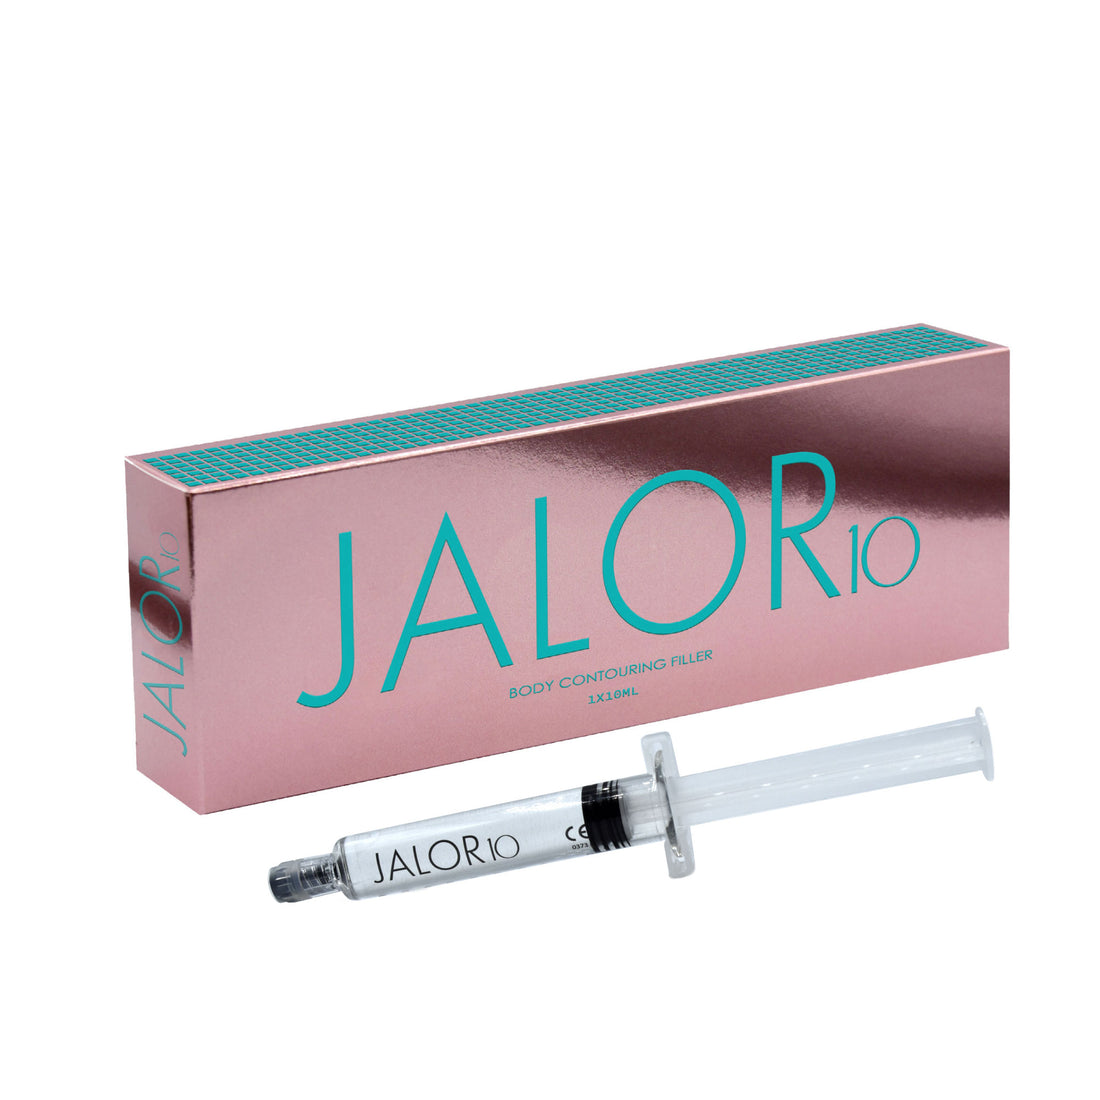 JALOR 10 - Filler for Body Contour Reconstruction